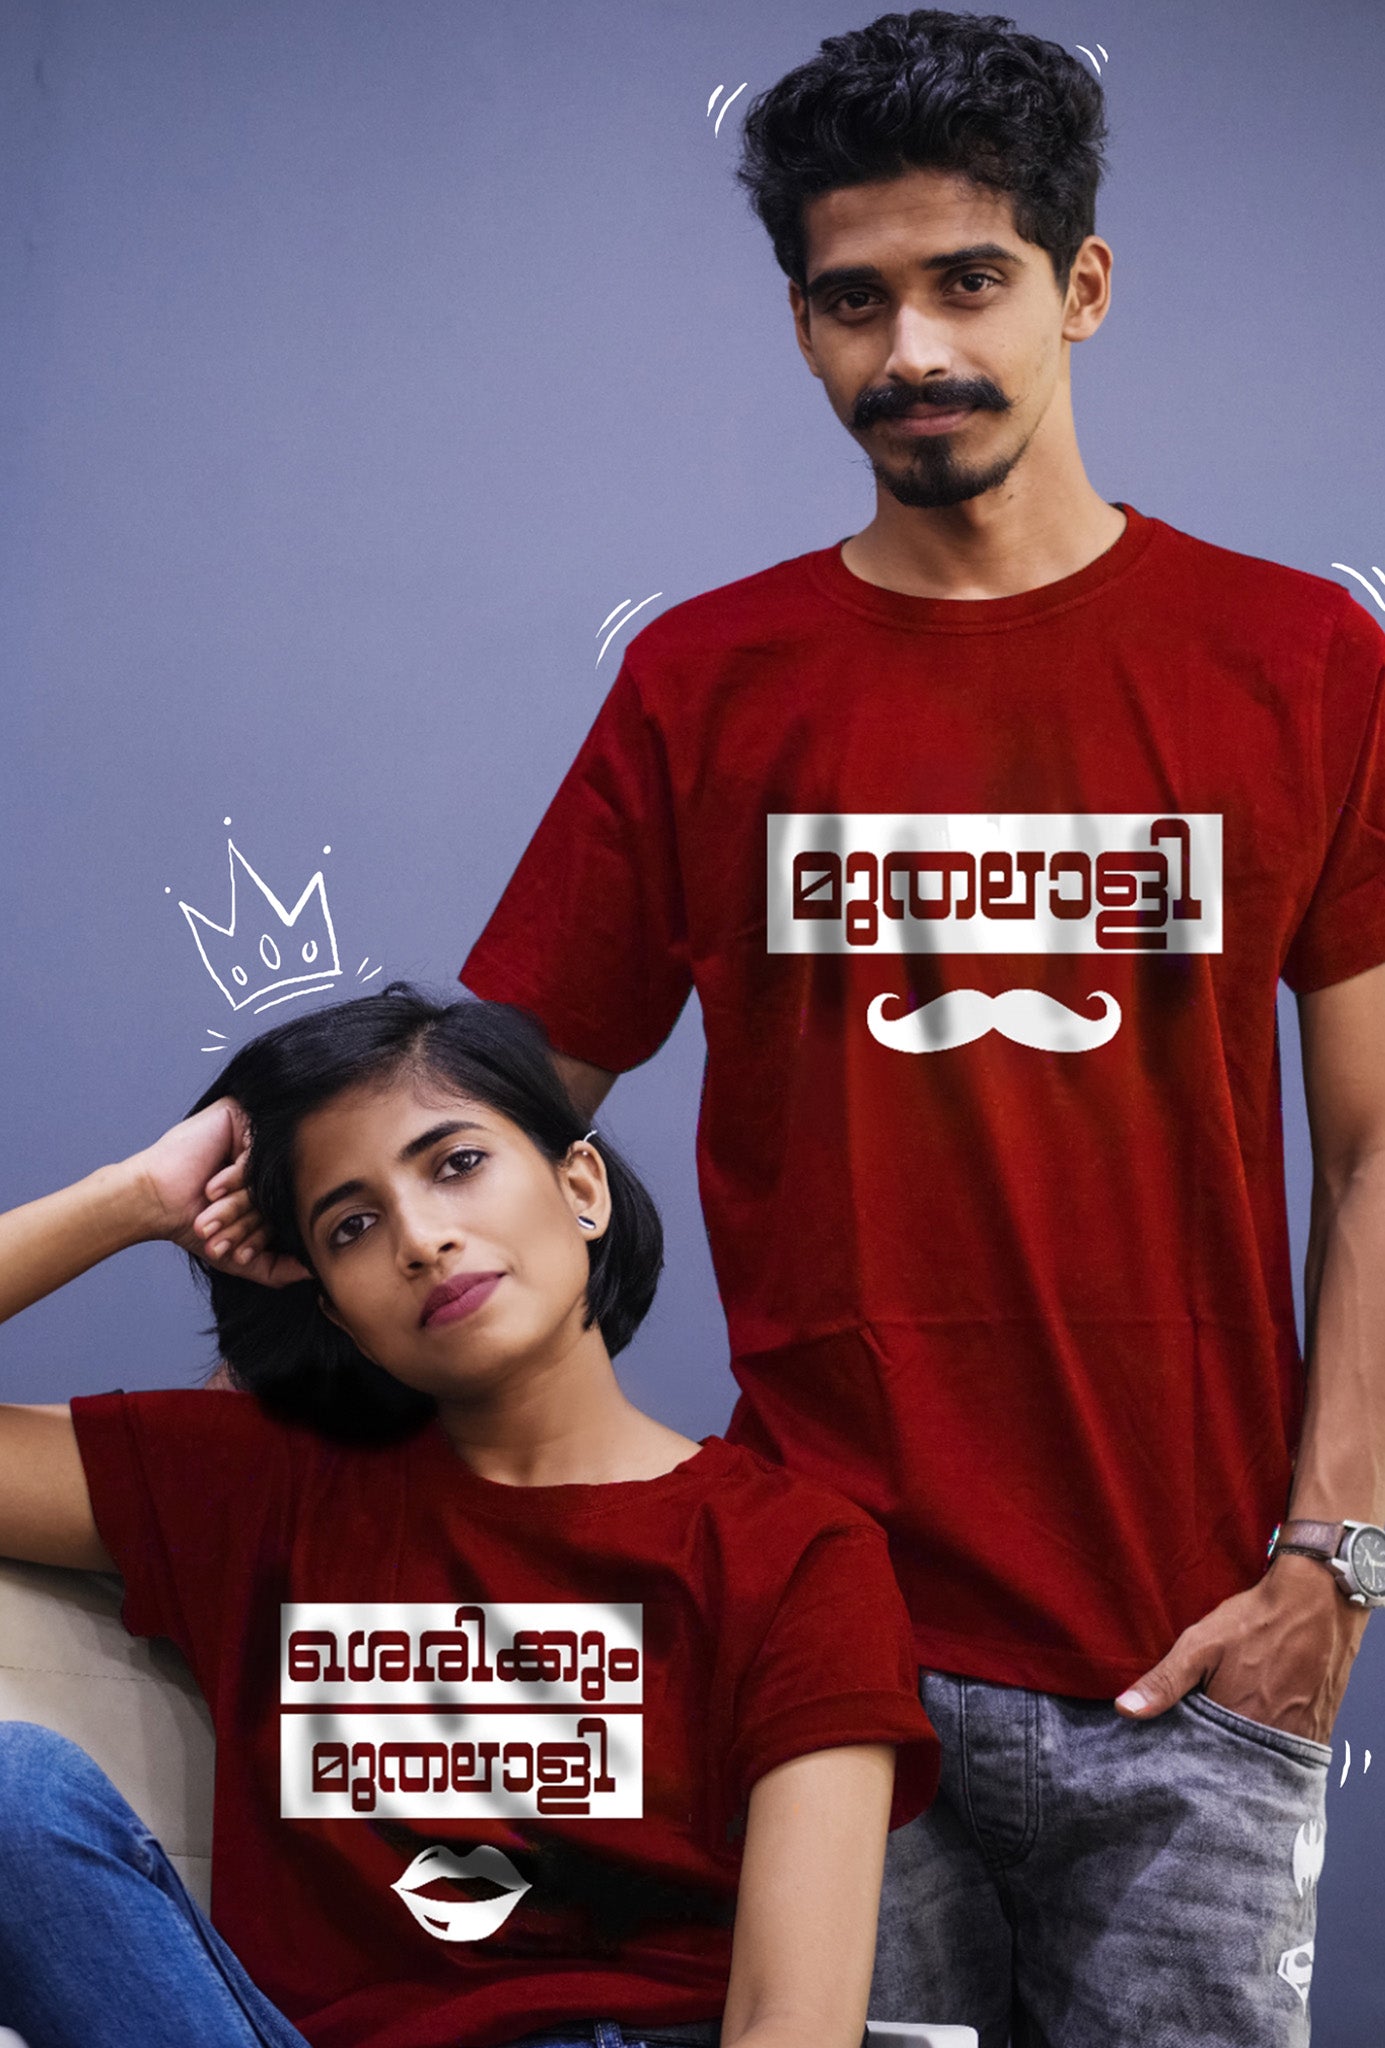 Muthalali Couple Tshirt